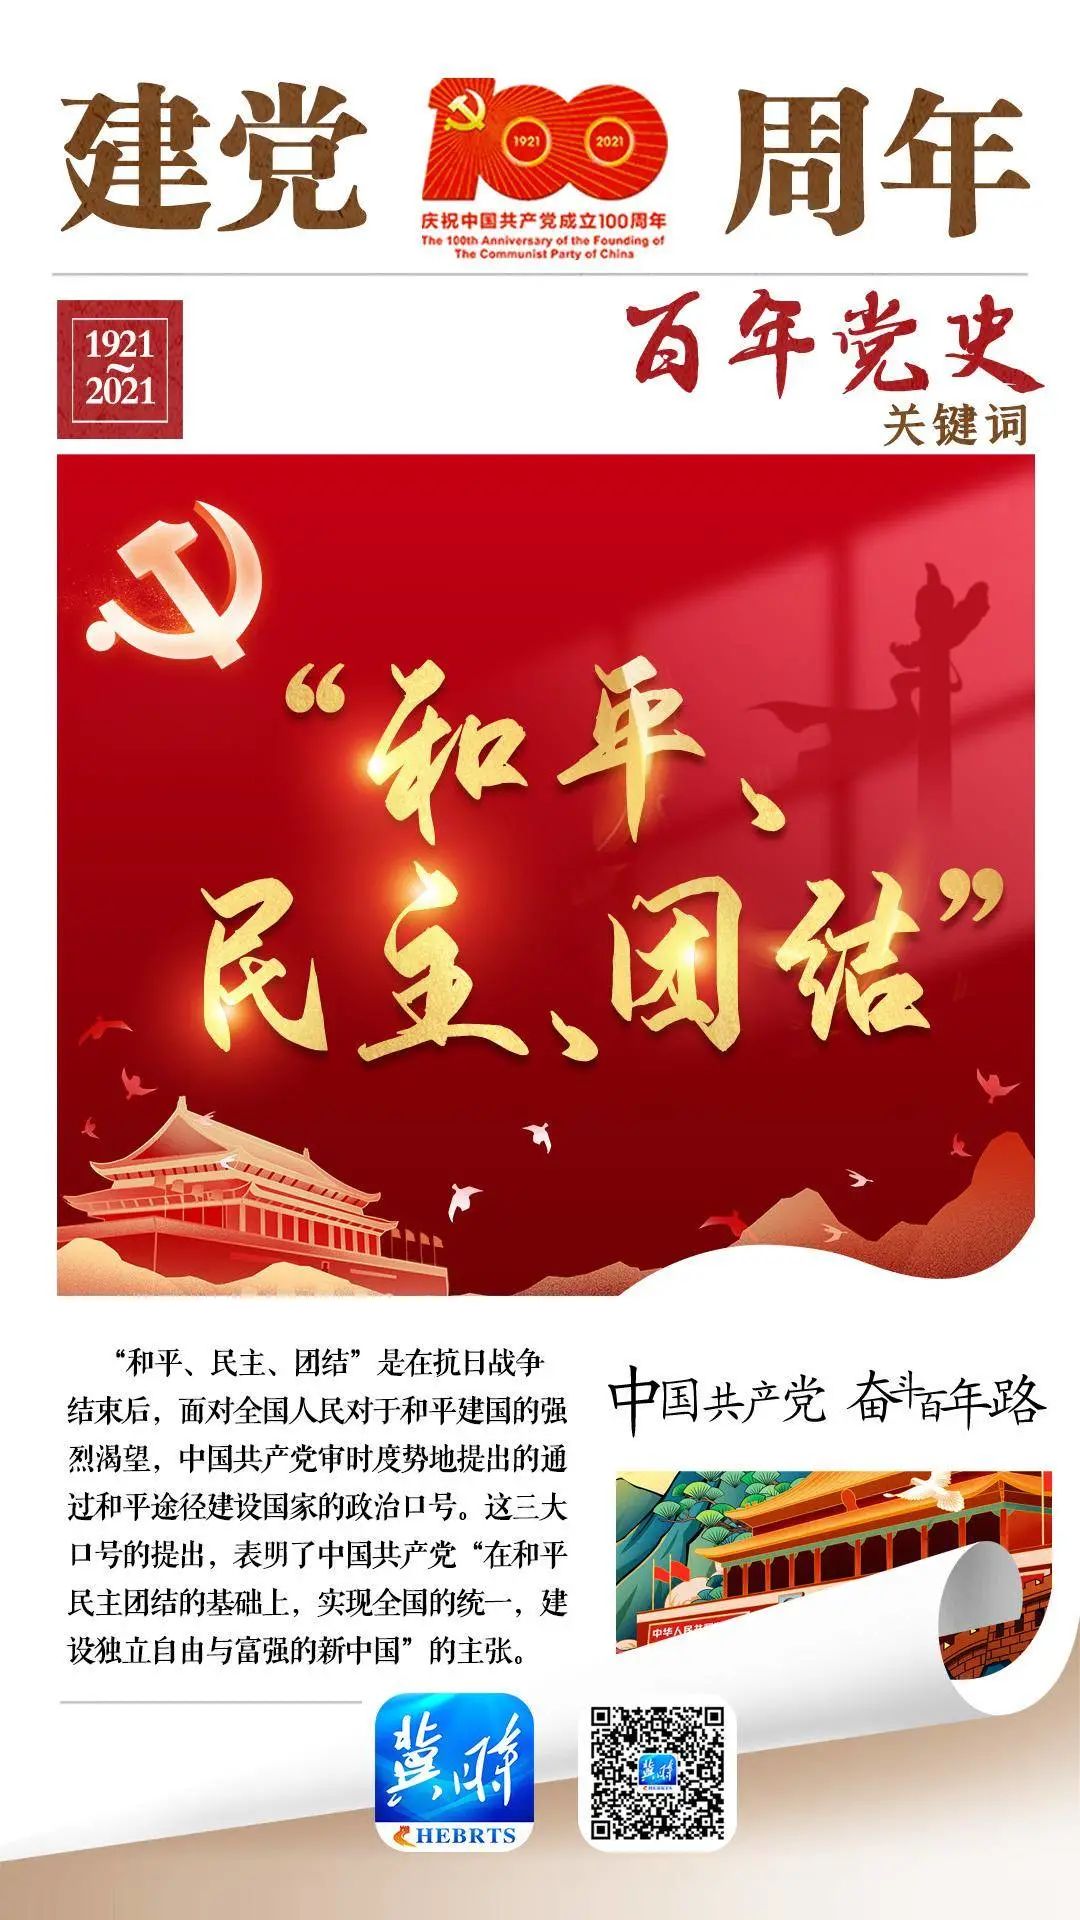 系列海报《百年党史关键词》:"和平,民主,团结"